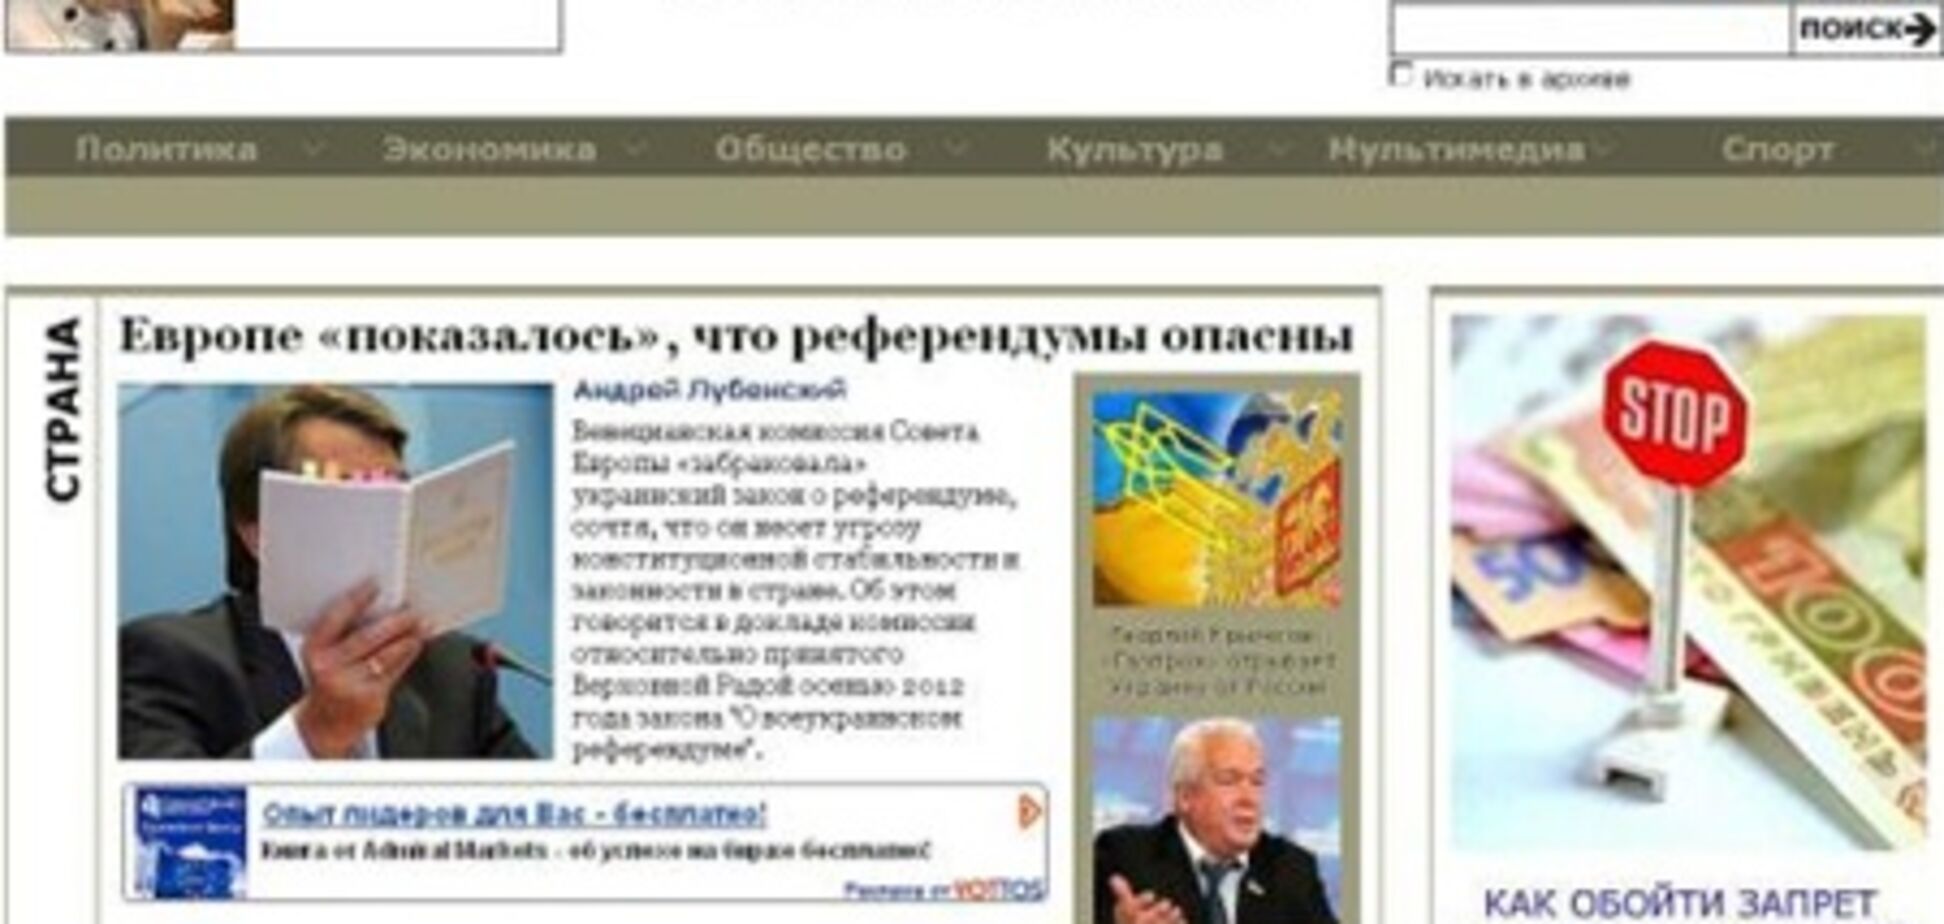 'Известия' против использования своего товарного знака Соколовской и грозят судом